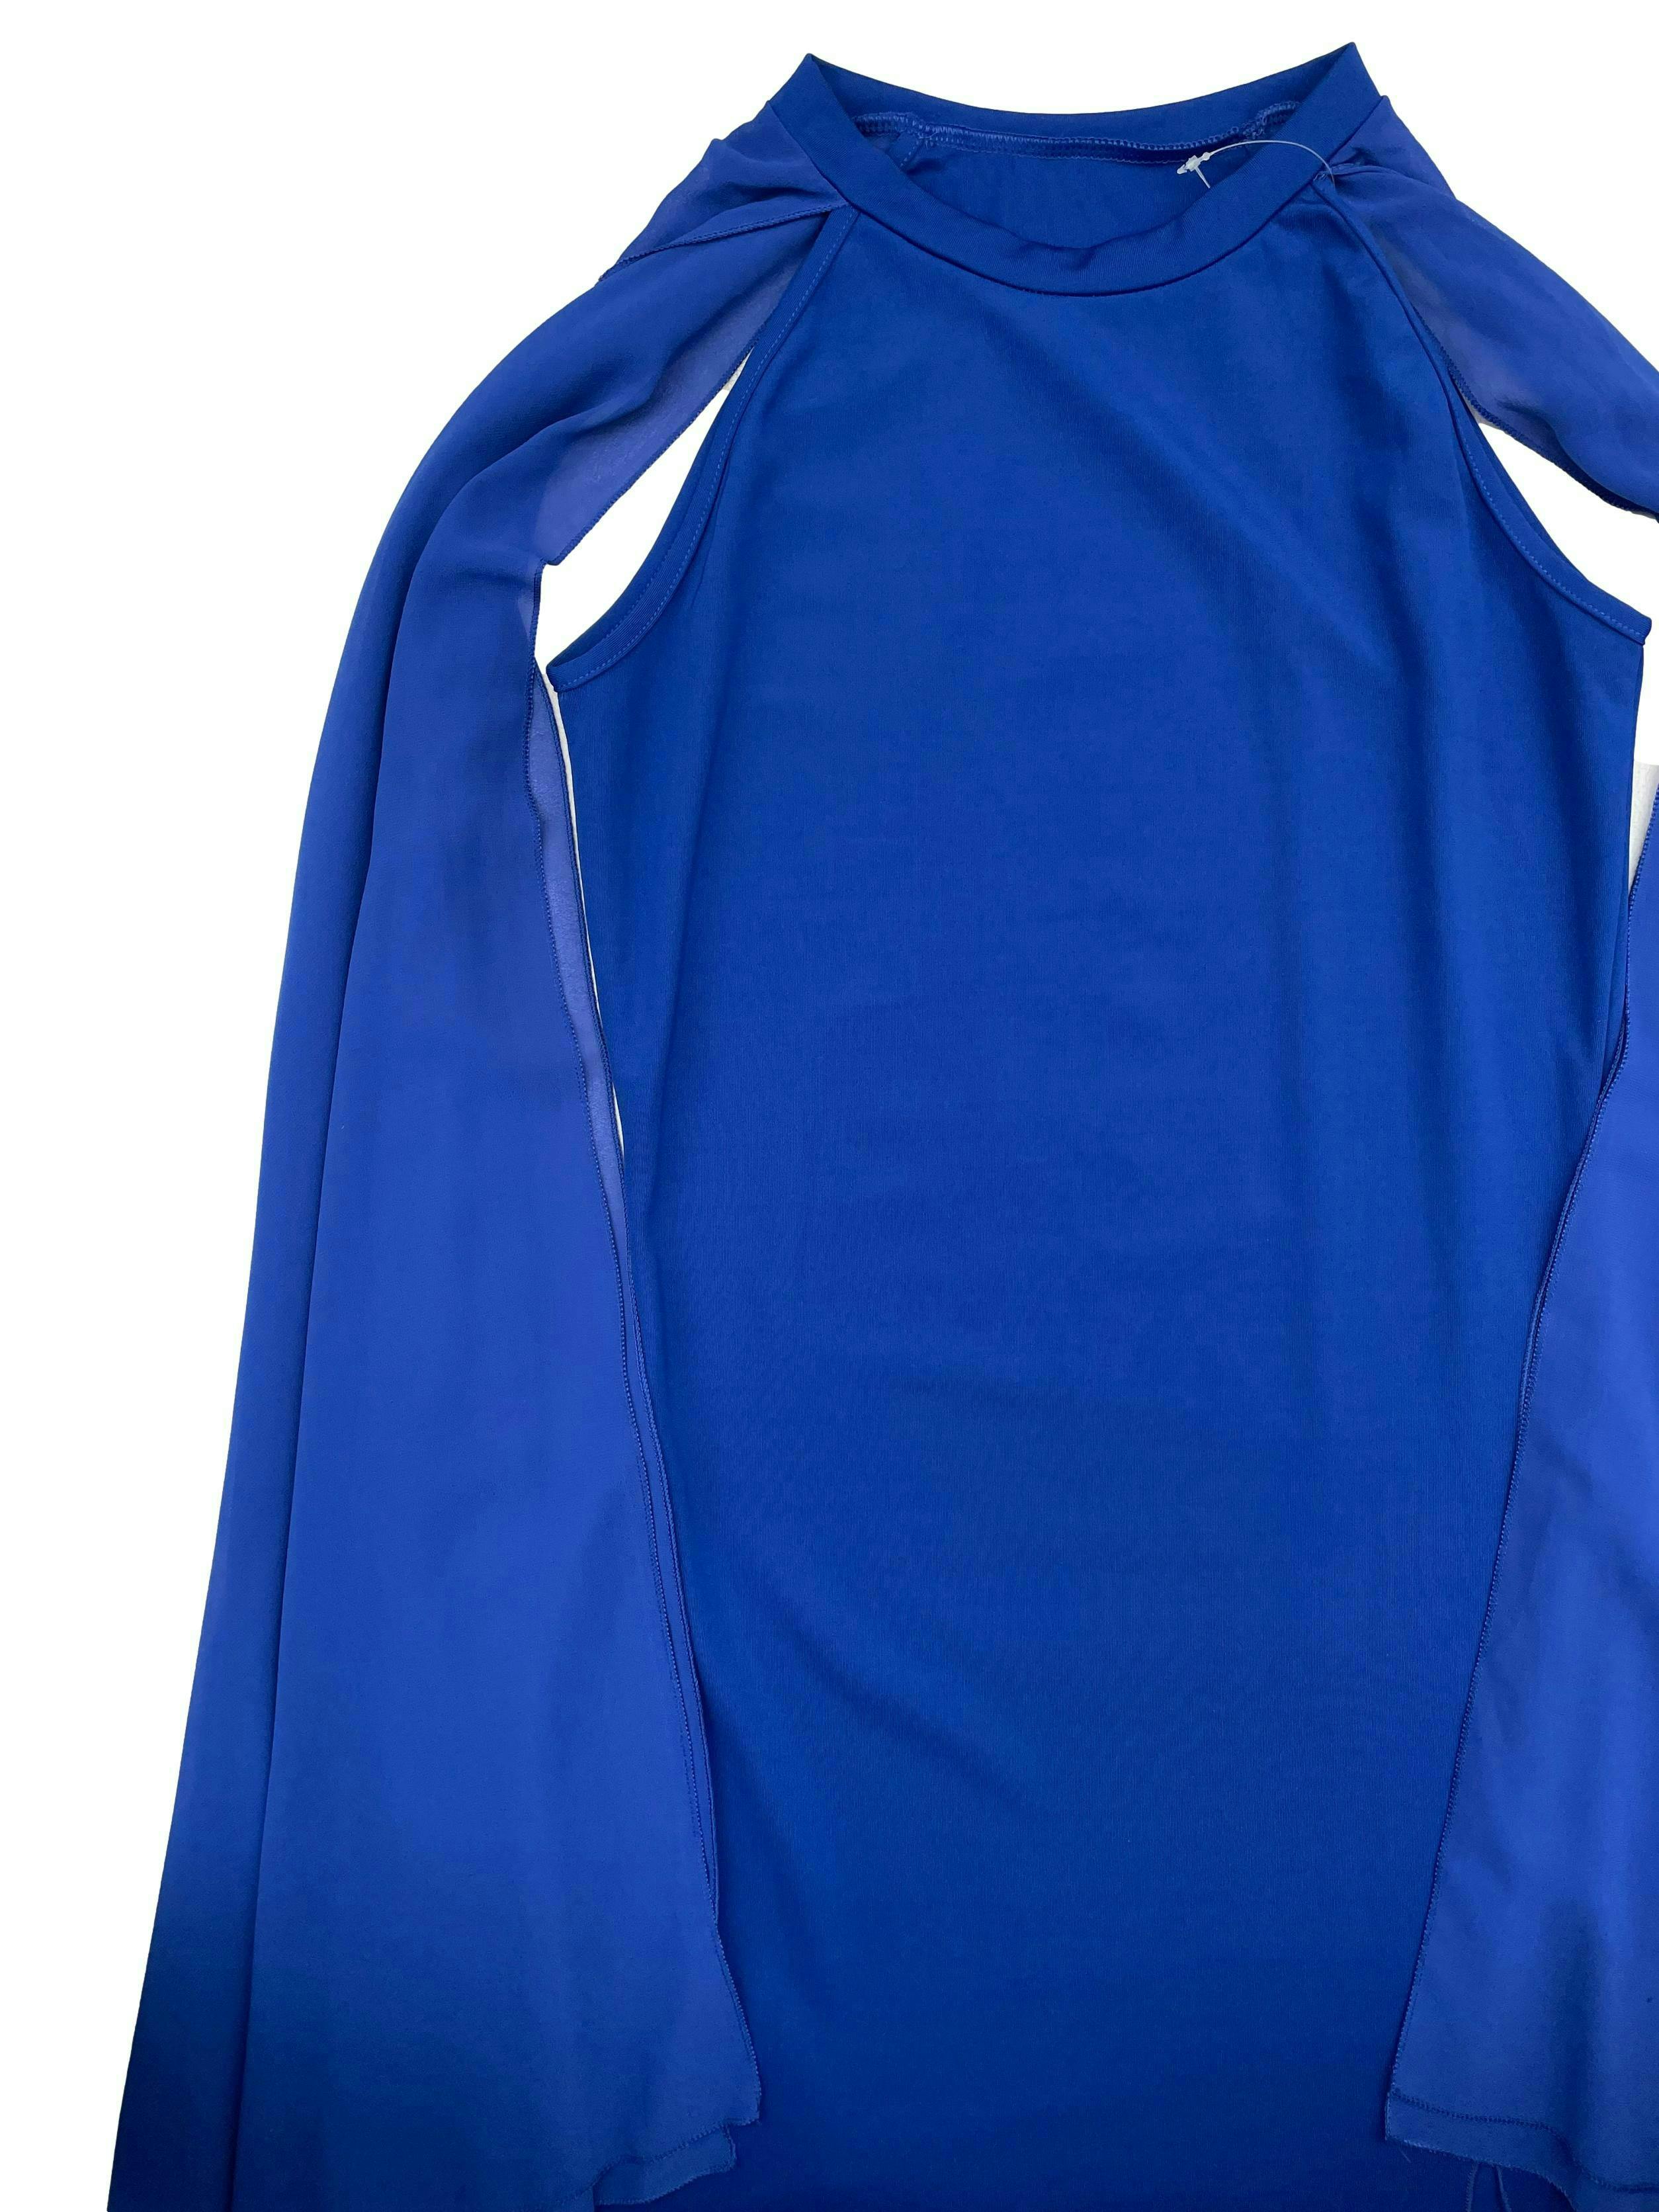 Vestido azul stretch con abertura lateral en la basta y capas de gasa en hombros tipo mangas. Busto 92cm sin estirar Largo 145cm.